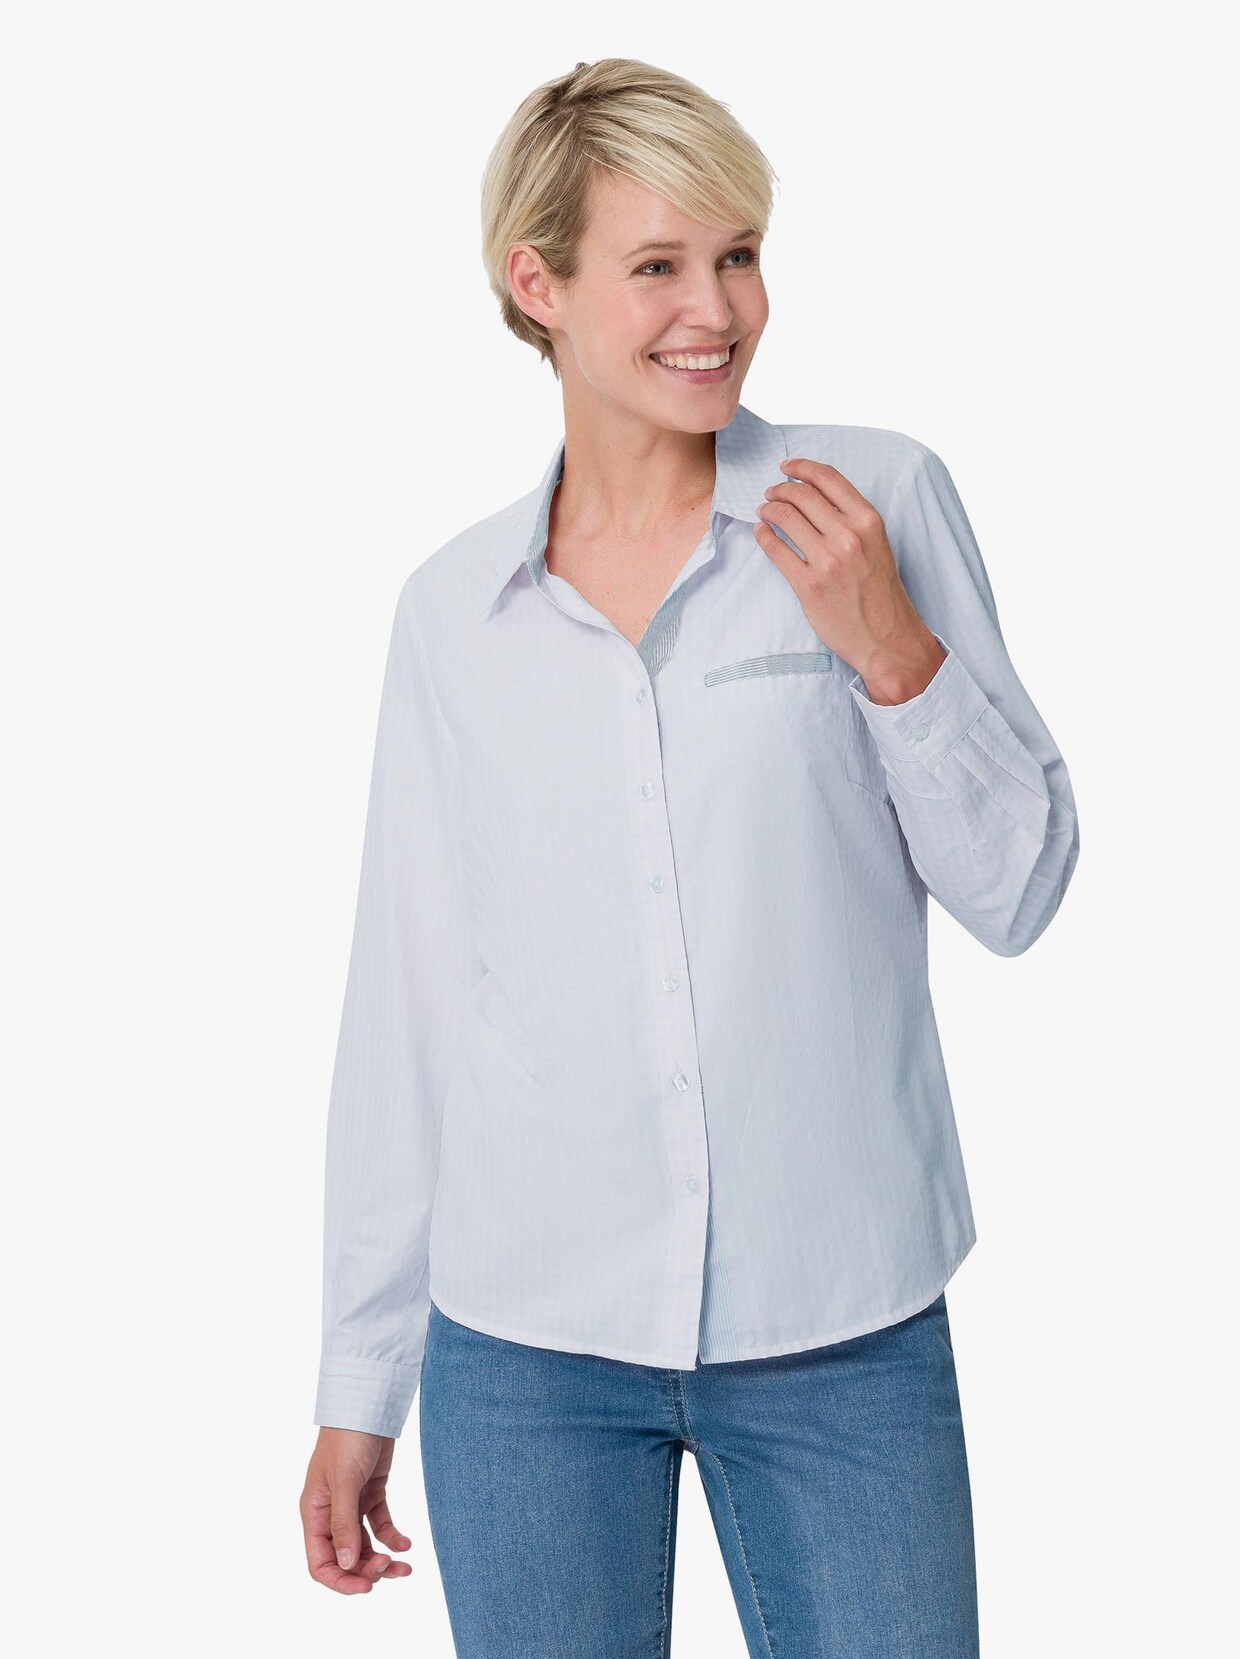 Geruite blouse - lichtblauw/wit geruit